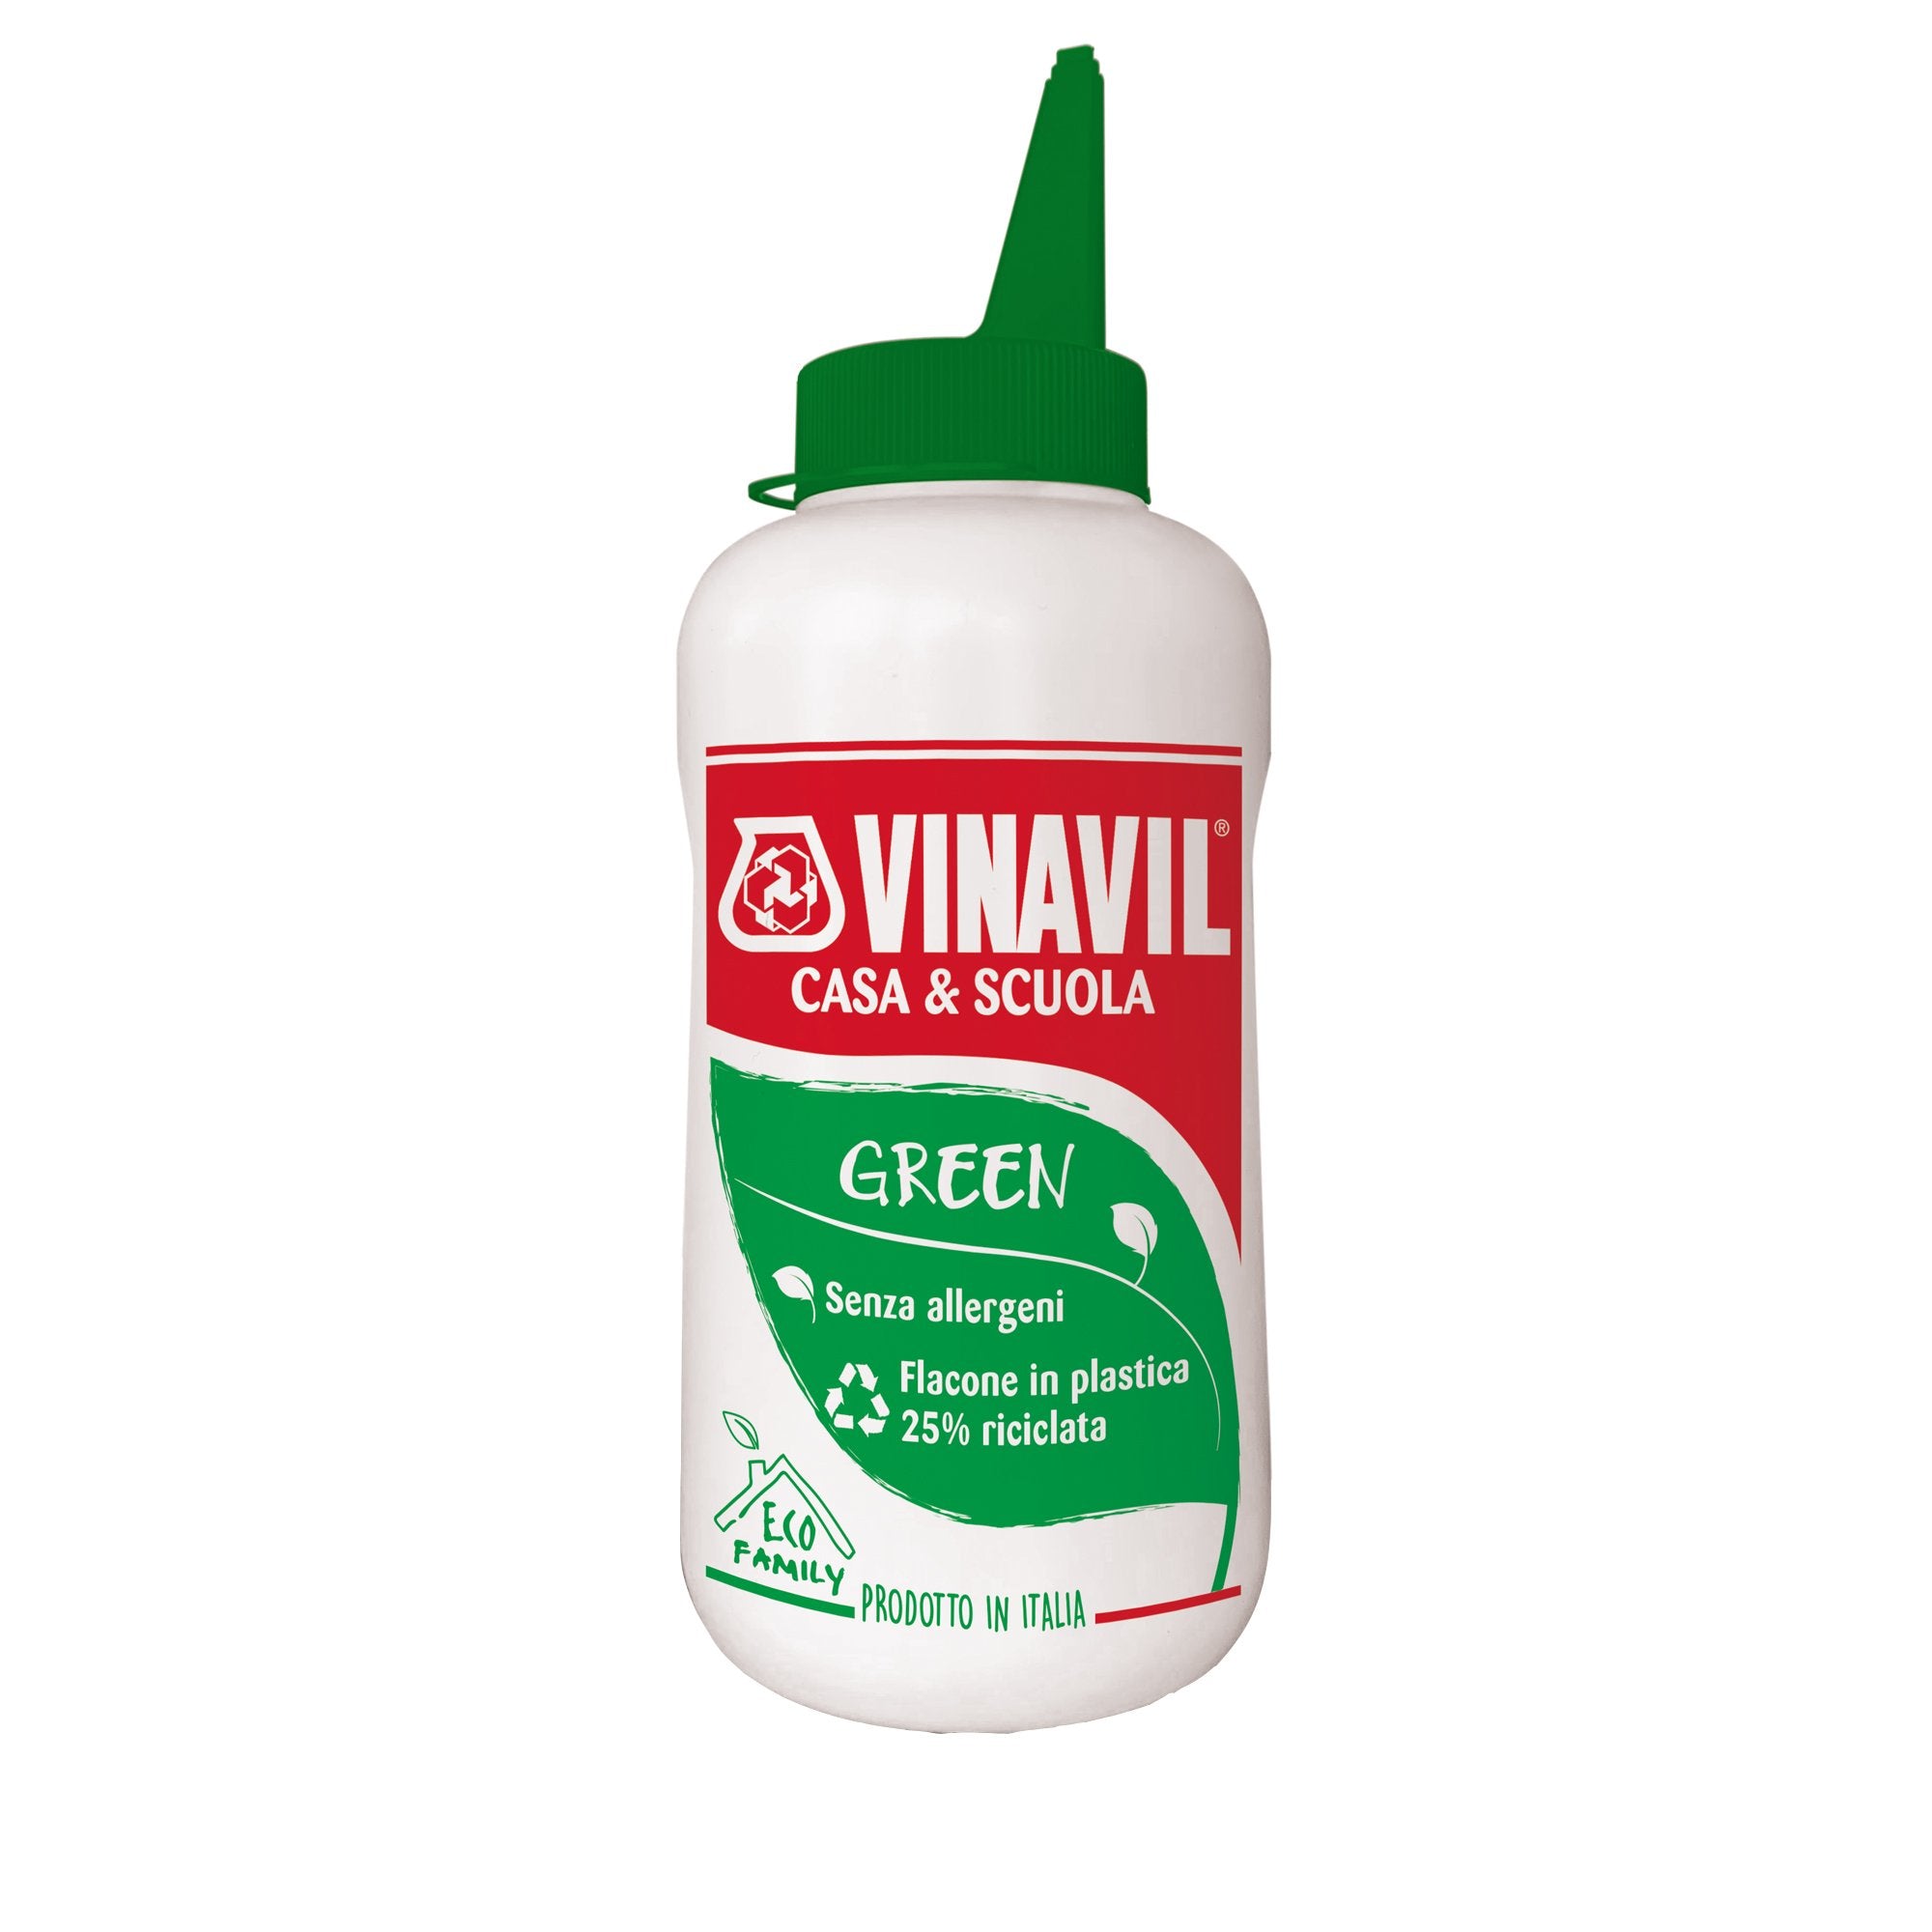 uhu-colla-universale-vinavil-green-scuola-750g-s-allergeni